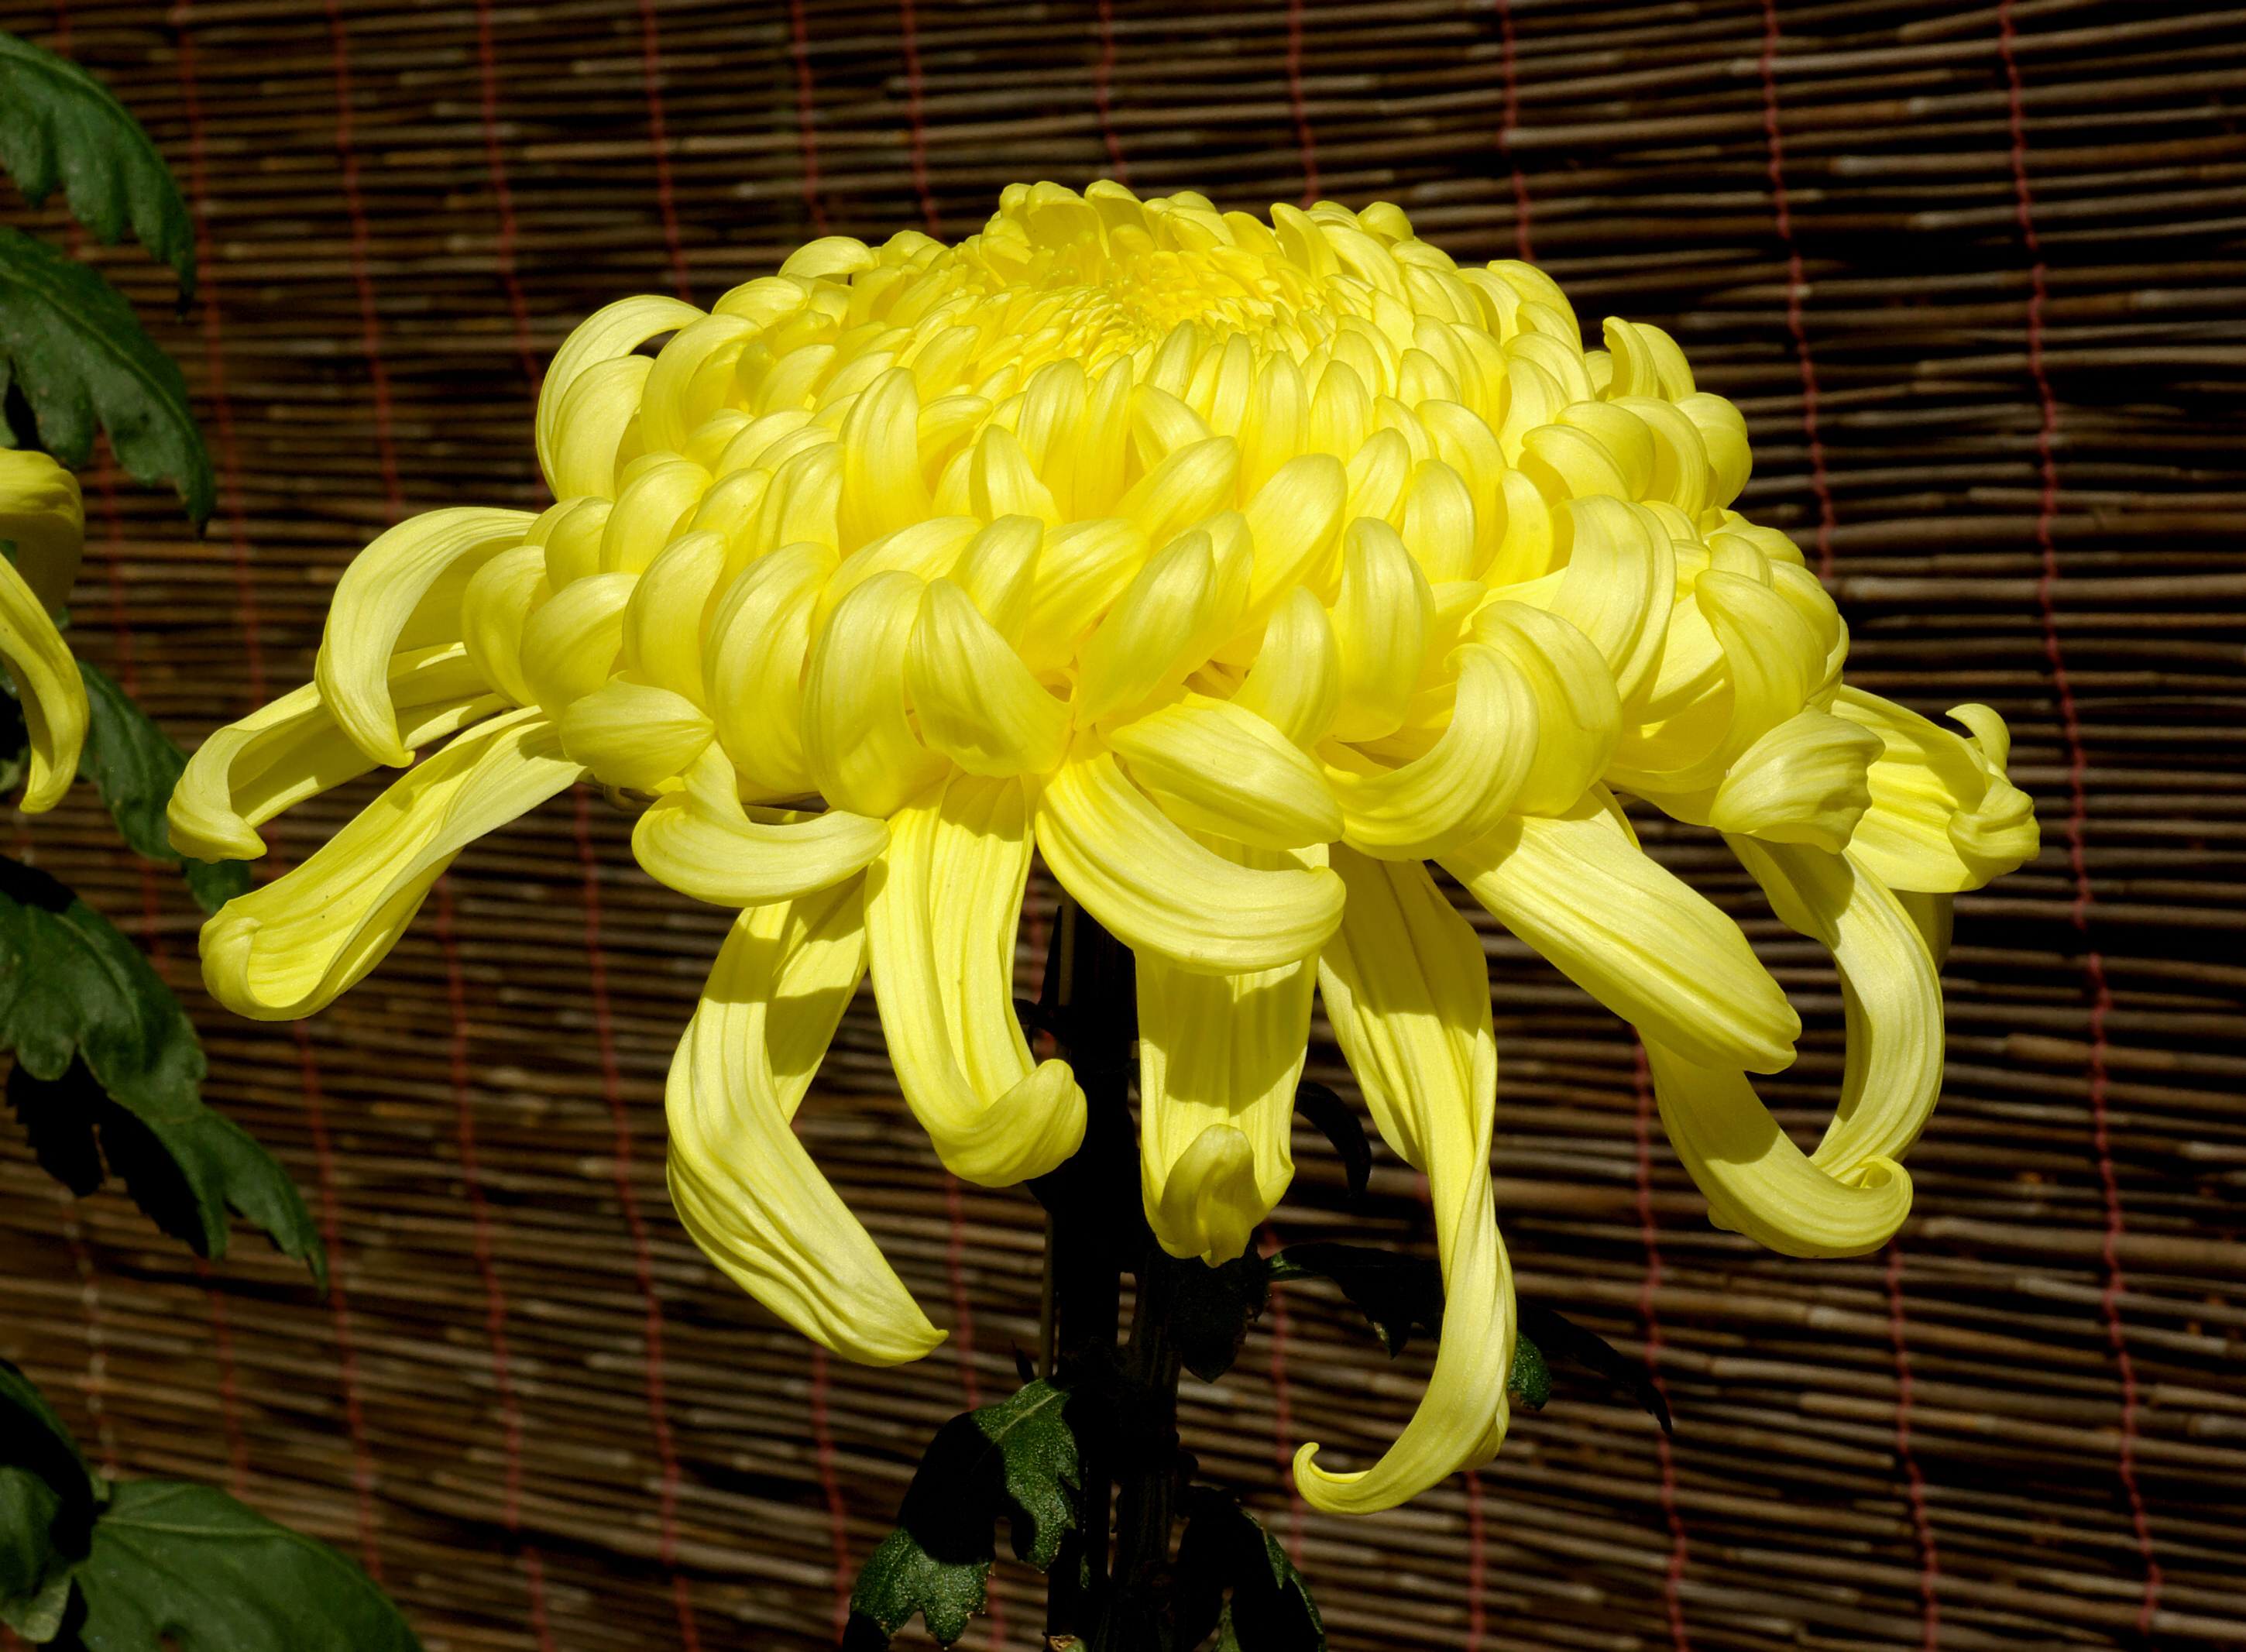 Chrysanthemum November 2007 Osaka Japan